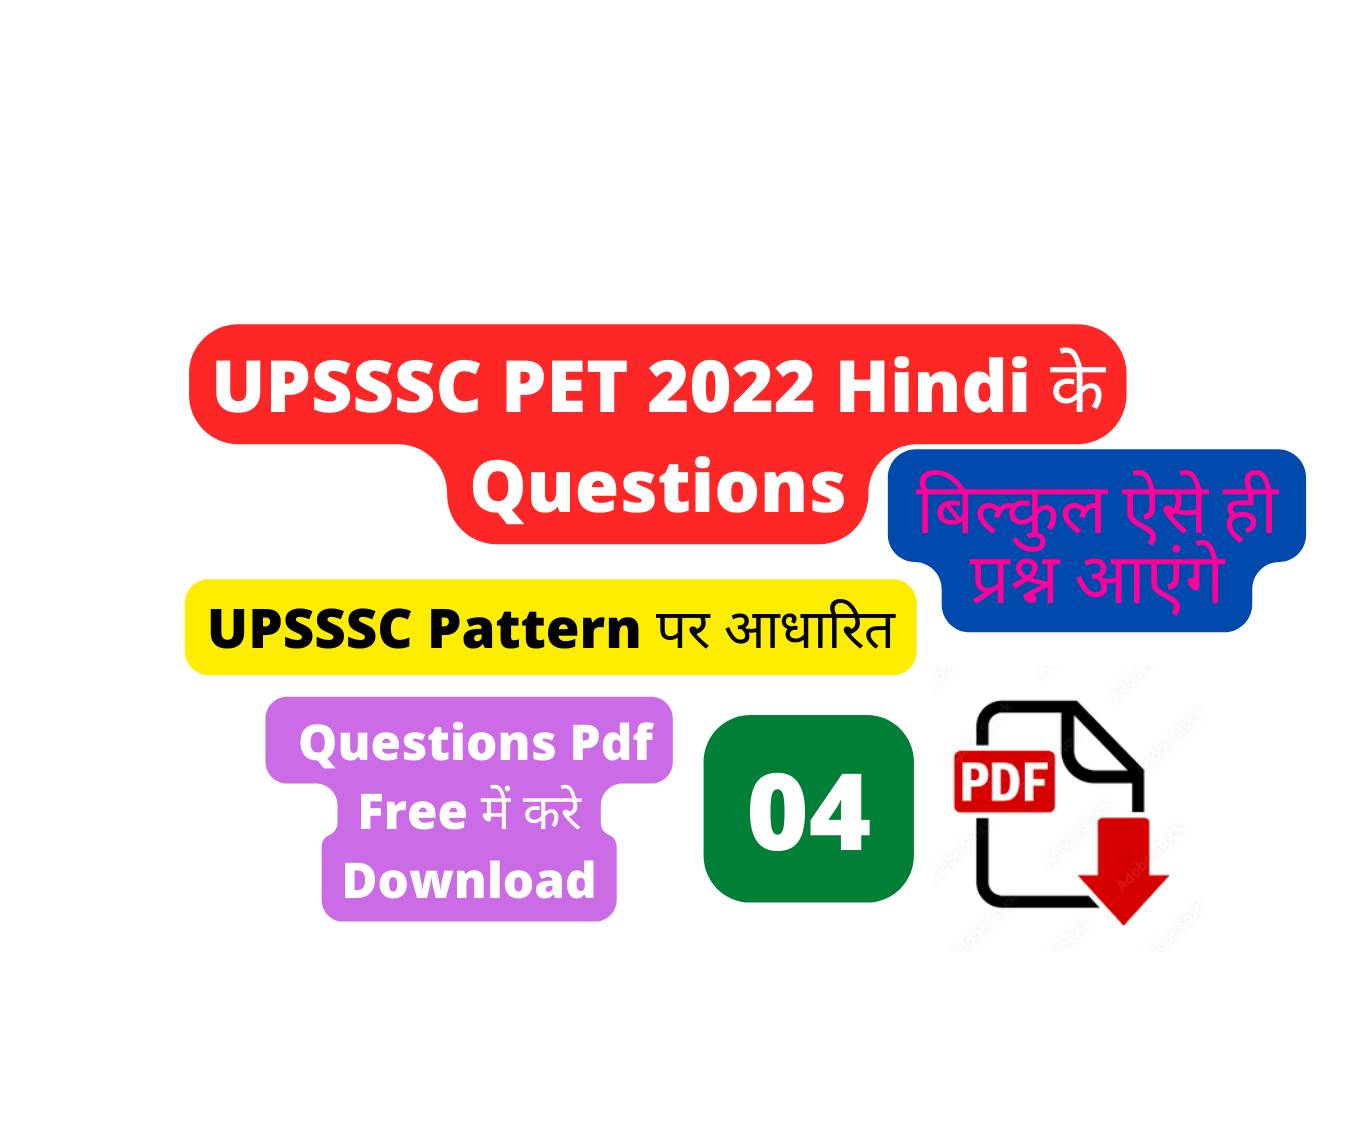 UPSSSC PET 2022 HINDI 04